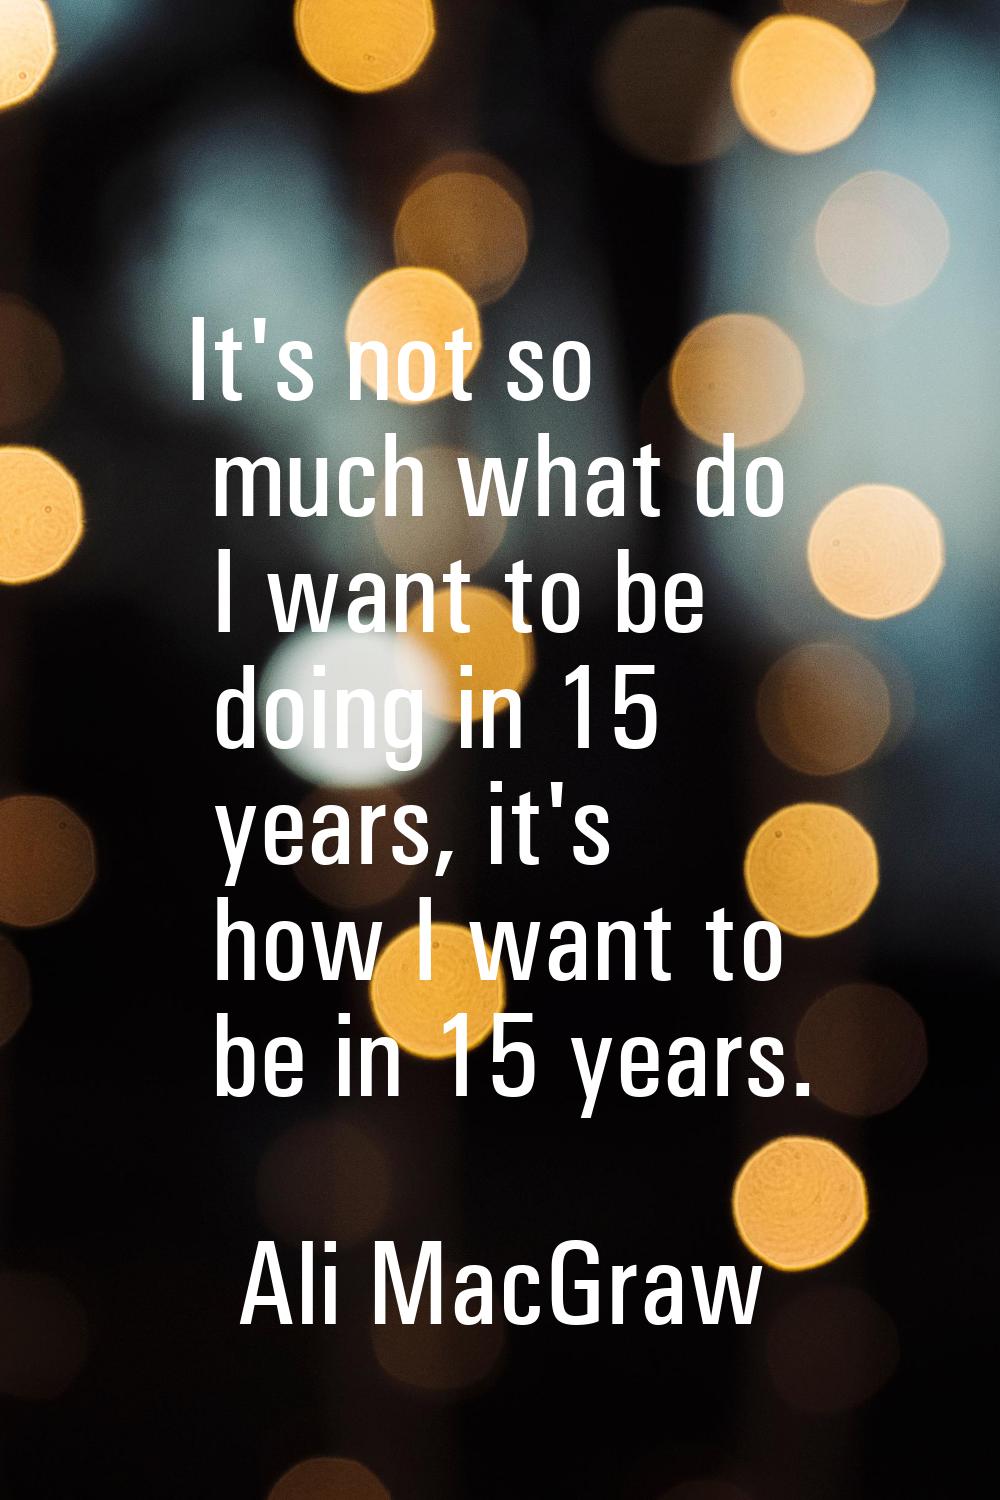 It's not so much what do I want to be doing in 15 years, it's how I want to be in 15 years.